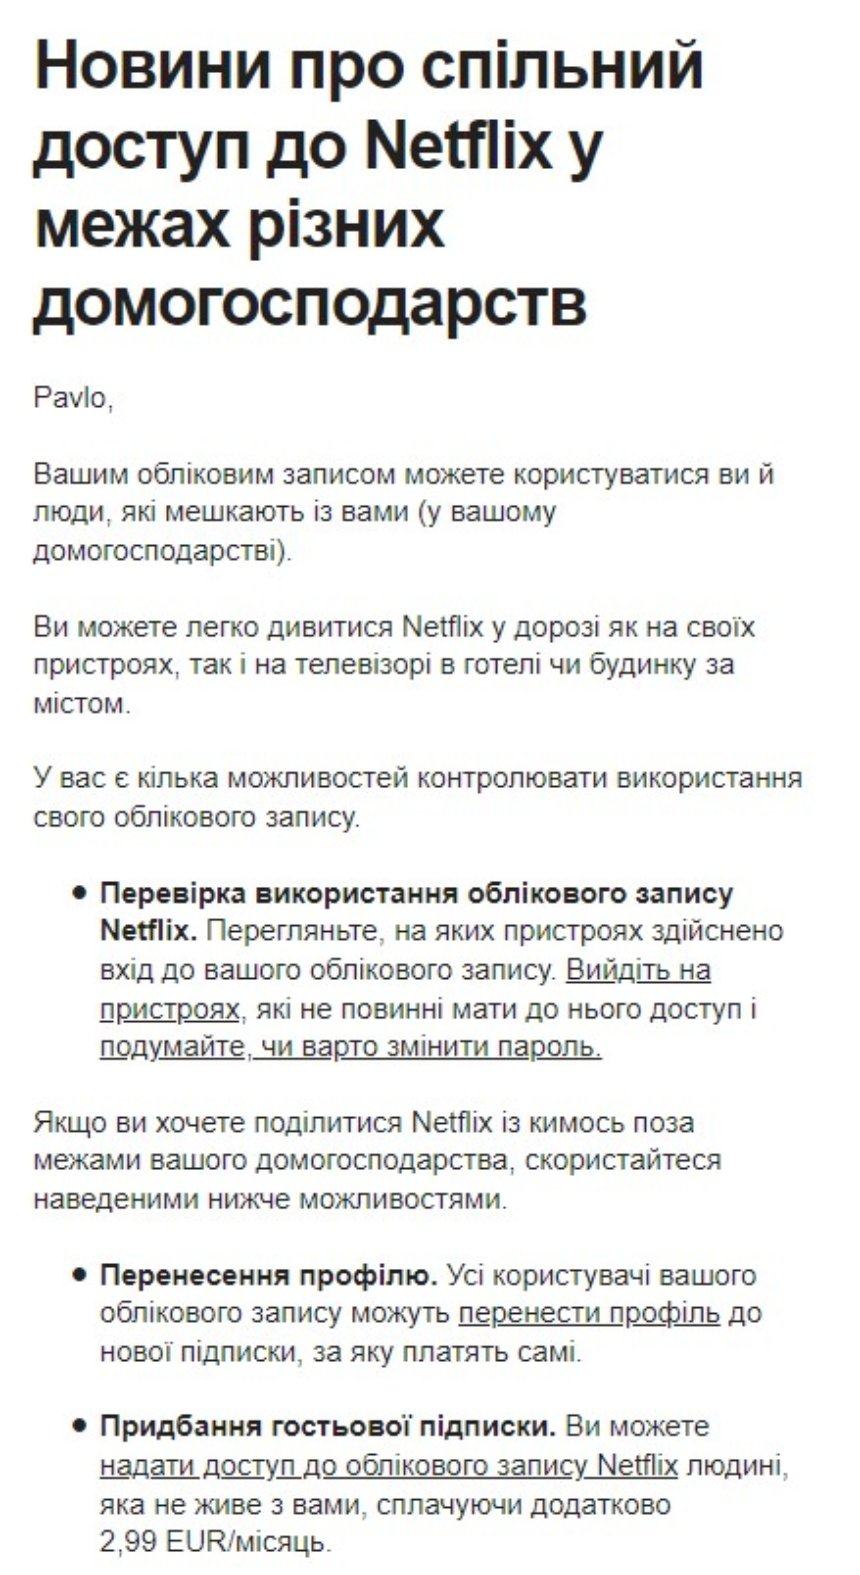 Повідомлення для користувачів Netflix щодо плати за шеринг паролями